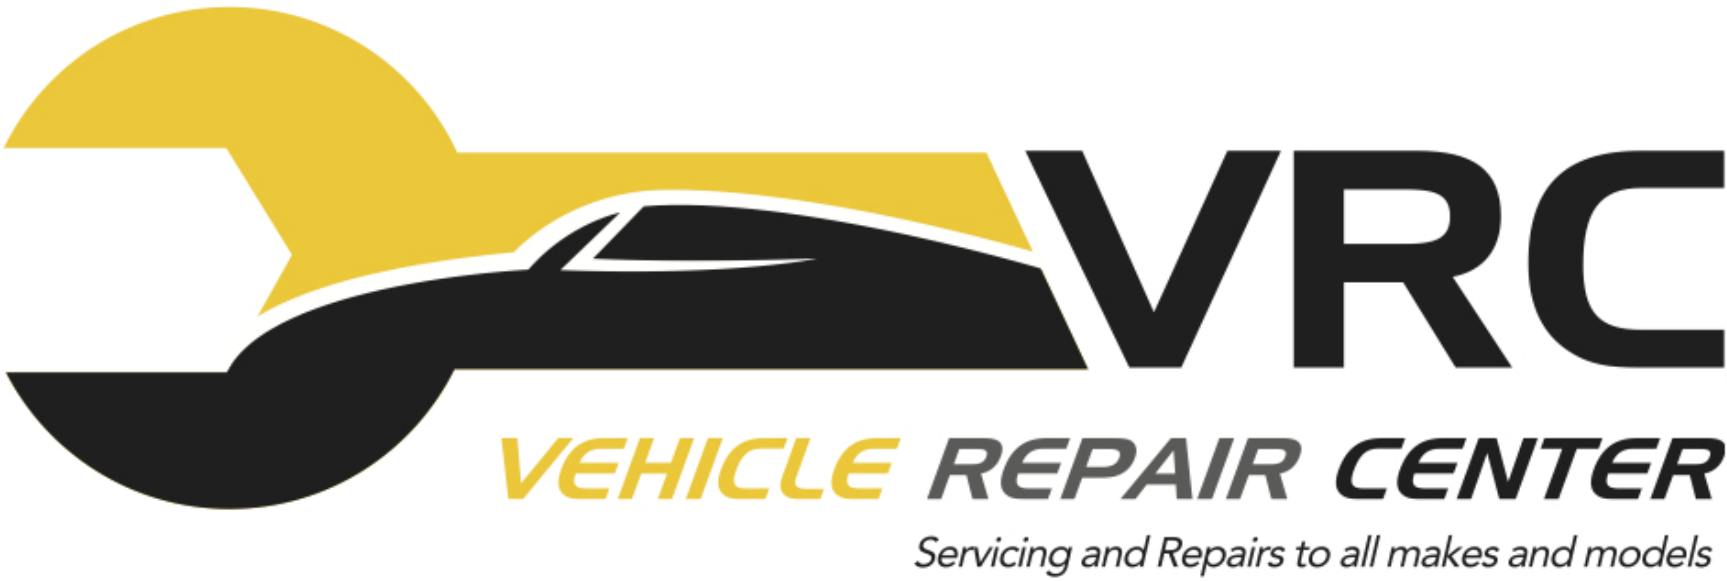 Vehicle Repair Center Ltd